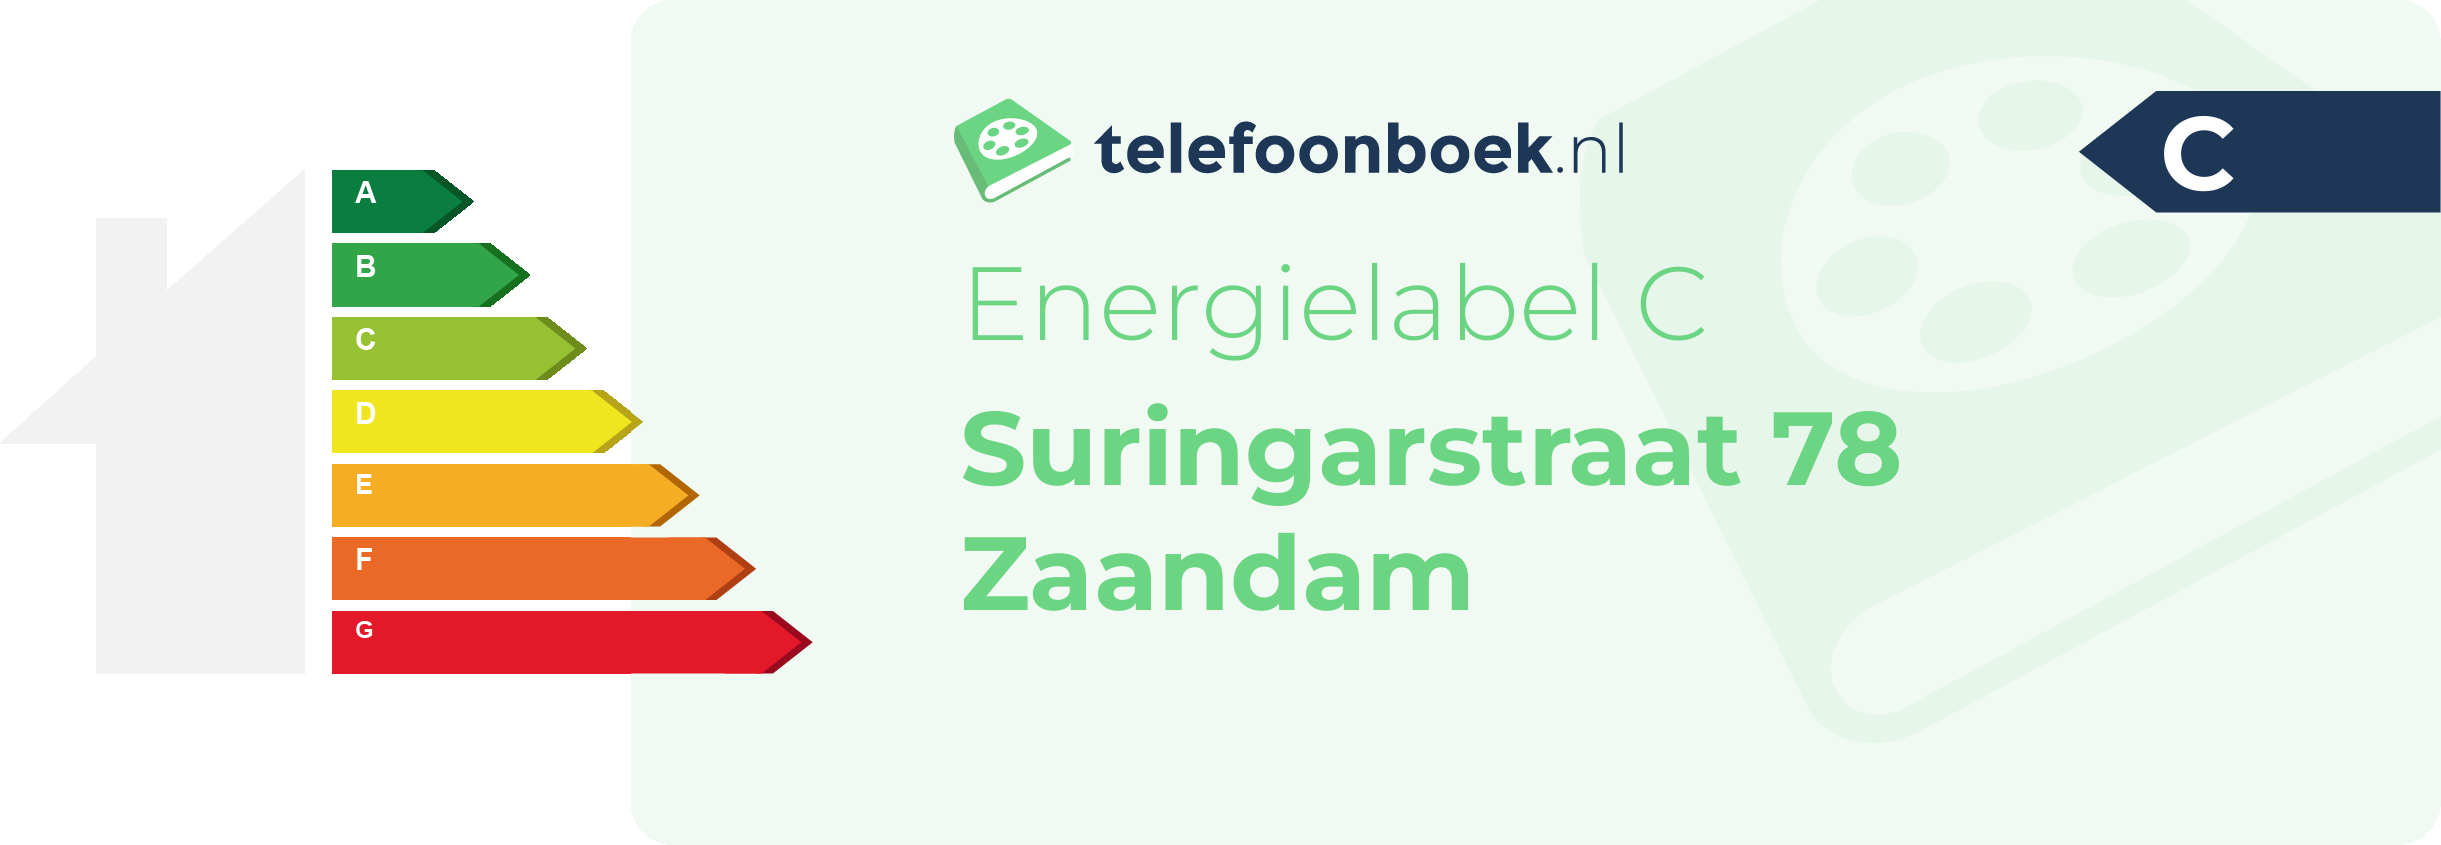 Energielabel Suringarstraat 78 Zaandam